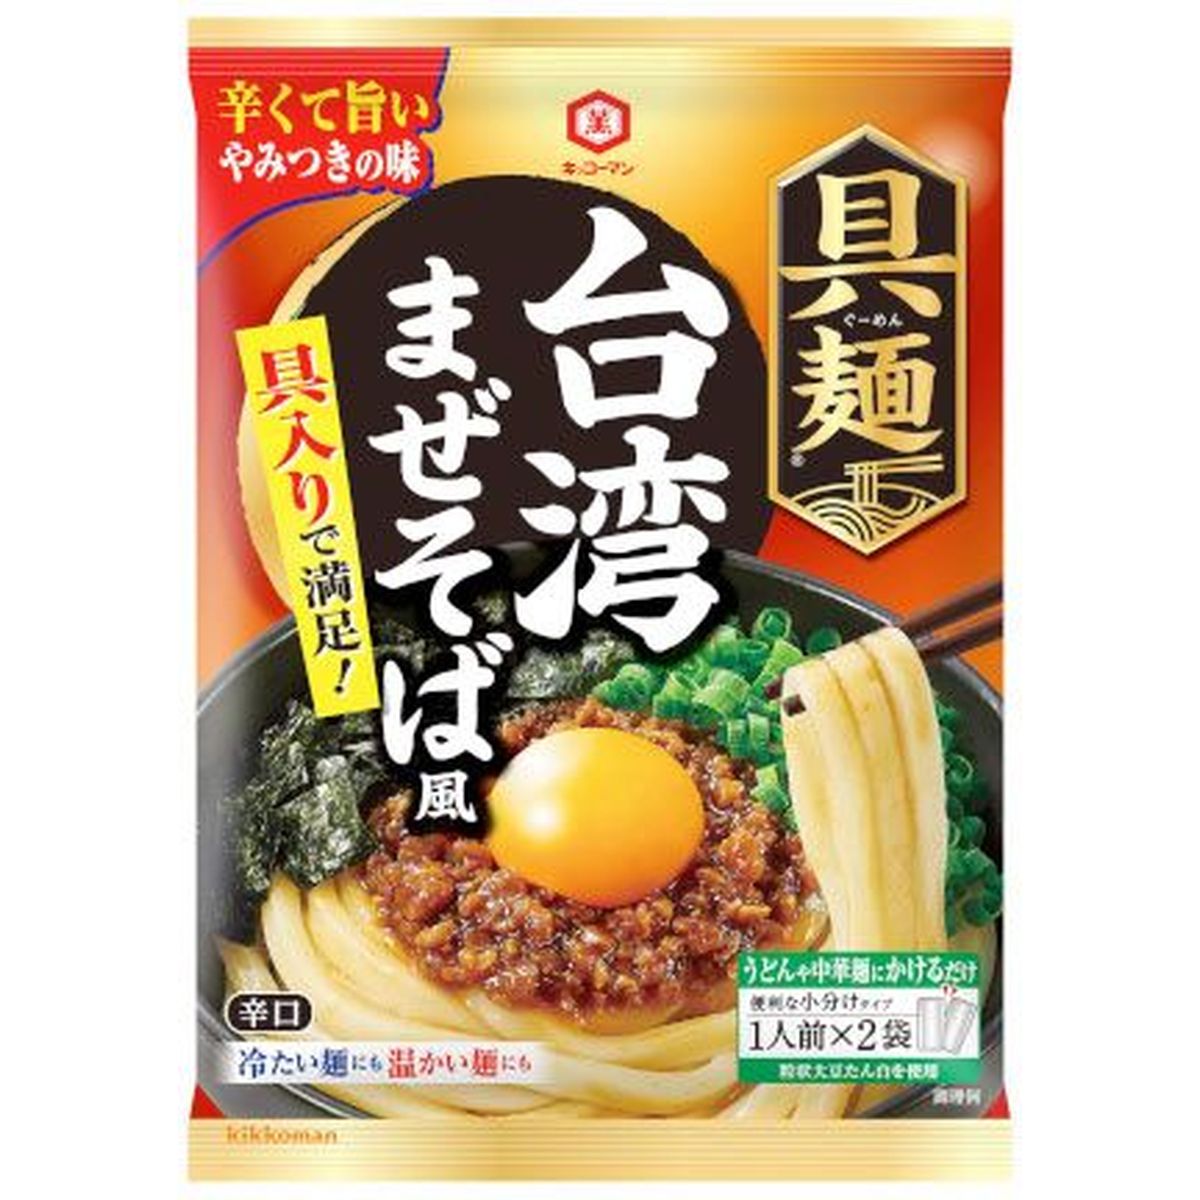 【10個入リ】キッコーマン 具麺 台湾マゼソバ風 116g